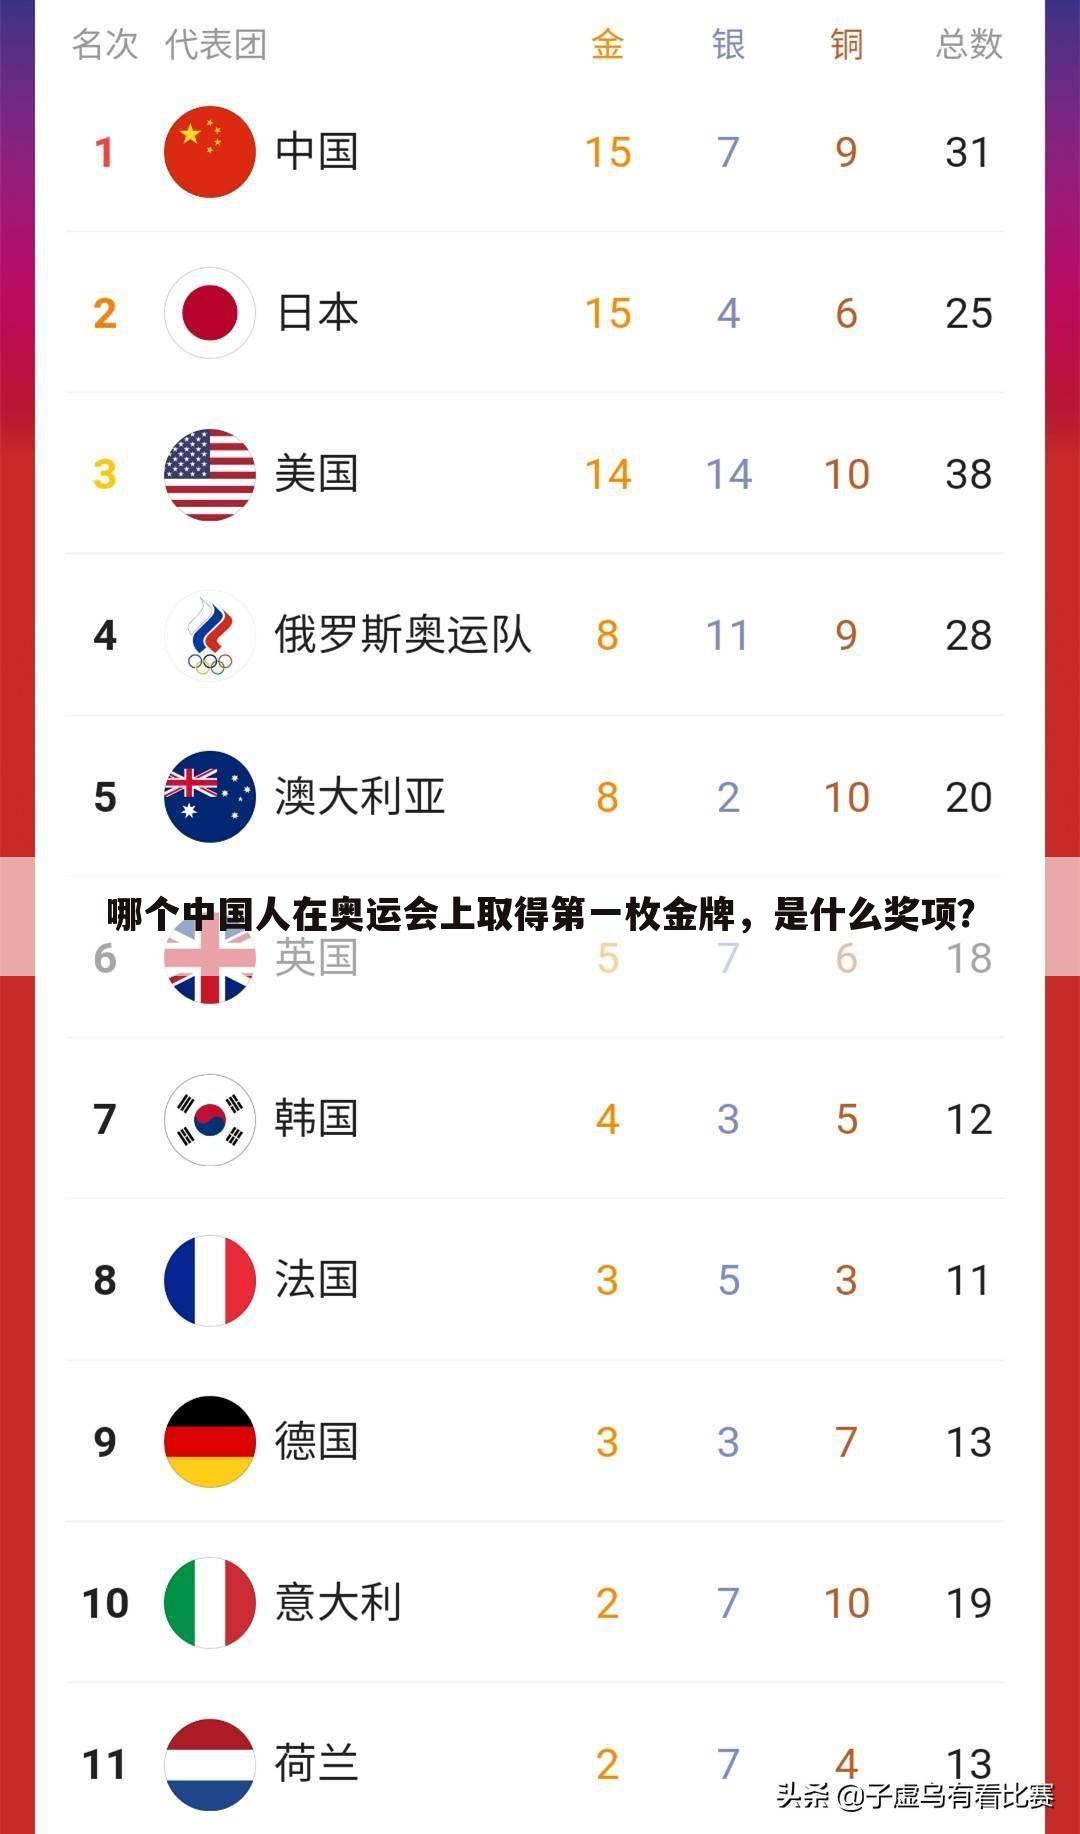 哪个中国人在奥运会上取得第一枚金牌，是什么奖项？